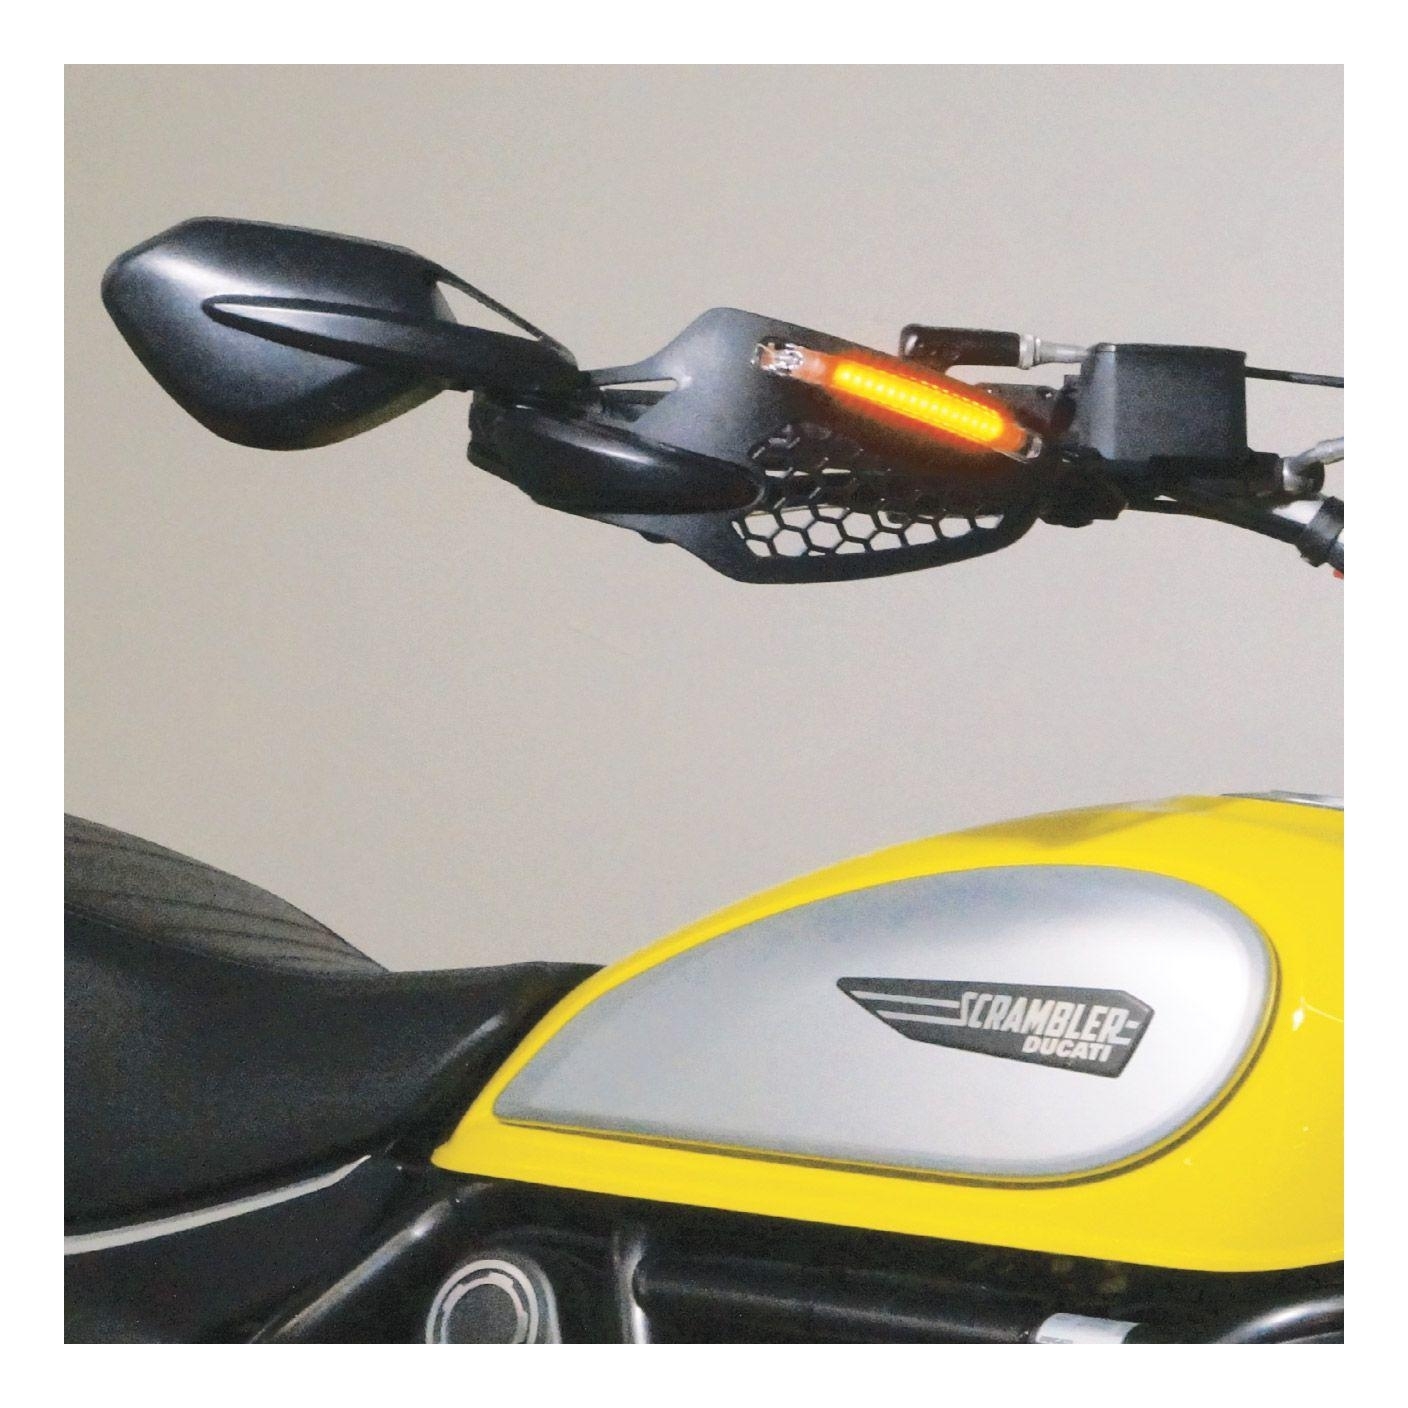 Rétroviseur scooter 50cc - Équipement moto